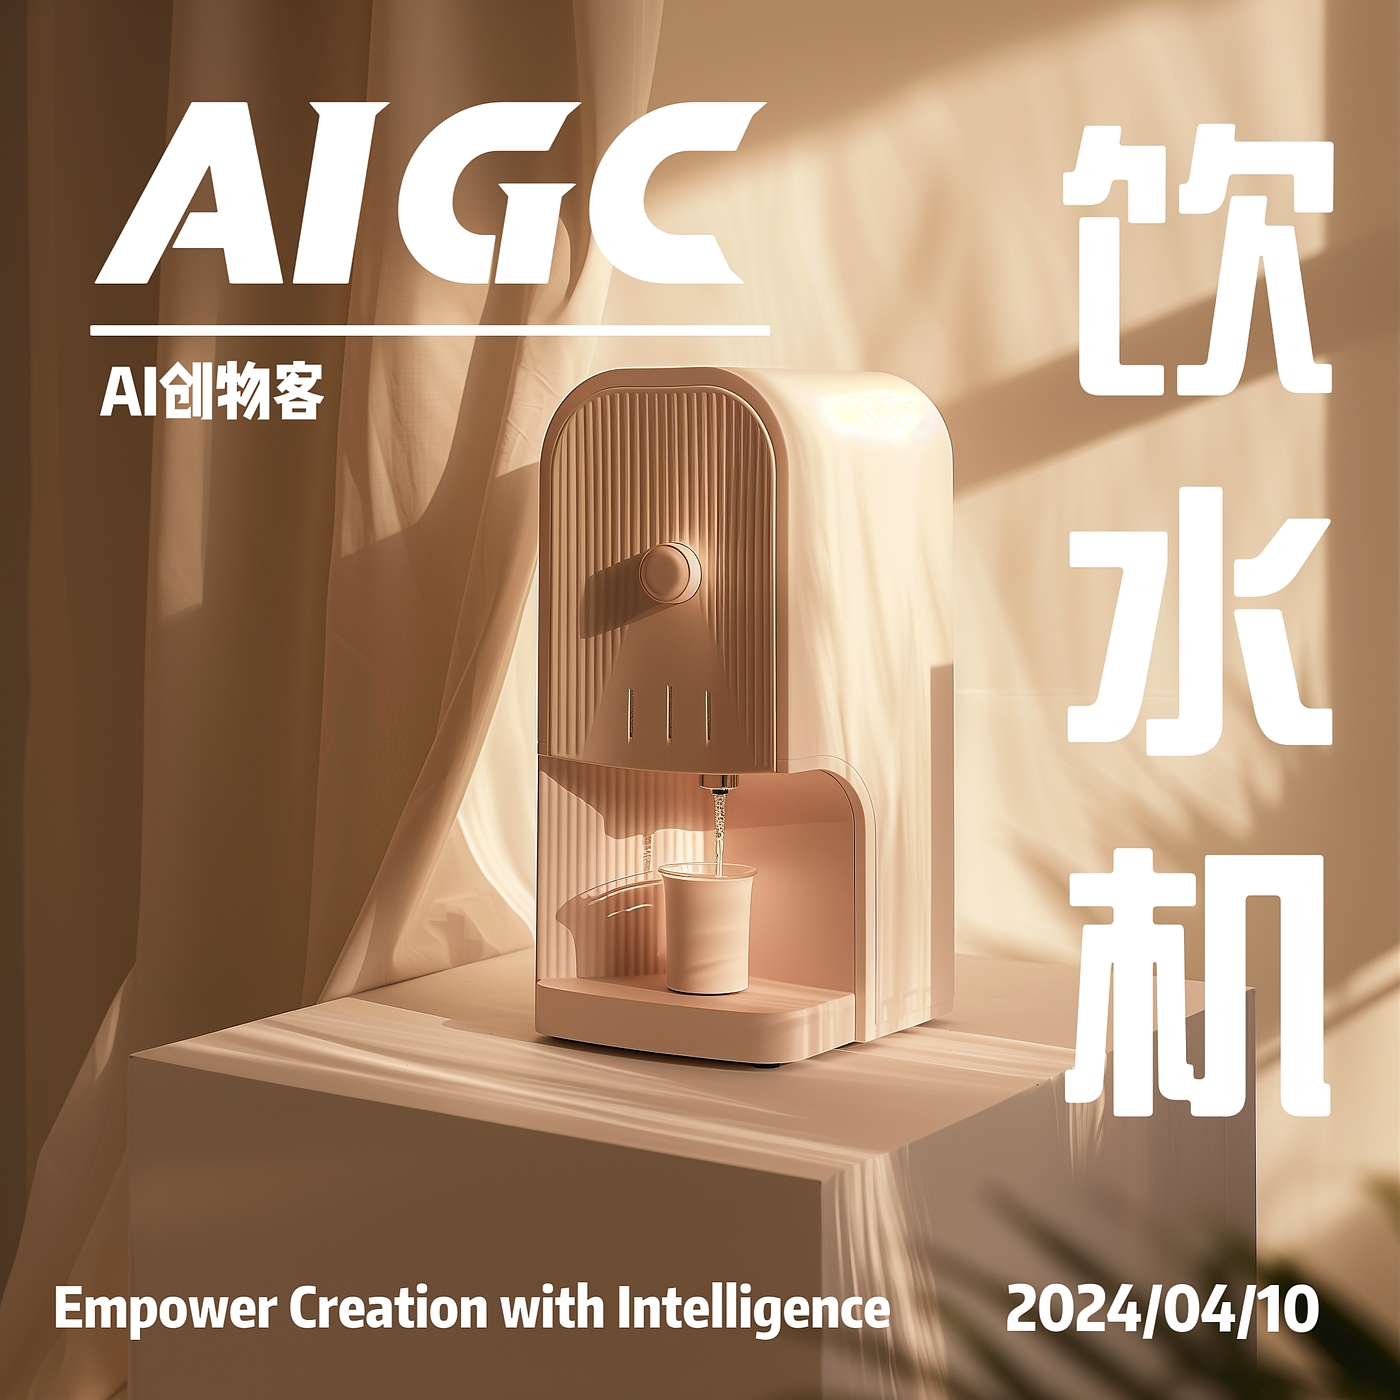 AIGC，AI设计，产品设计，工业设计，家电产品，饮水机，